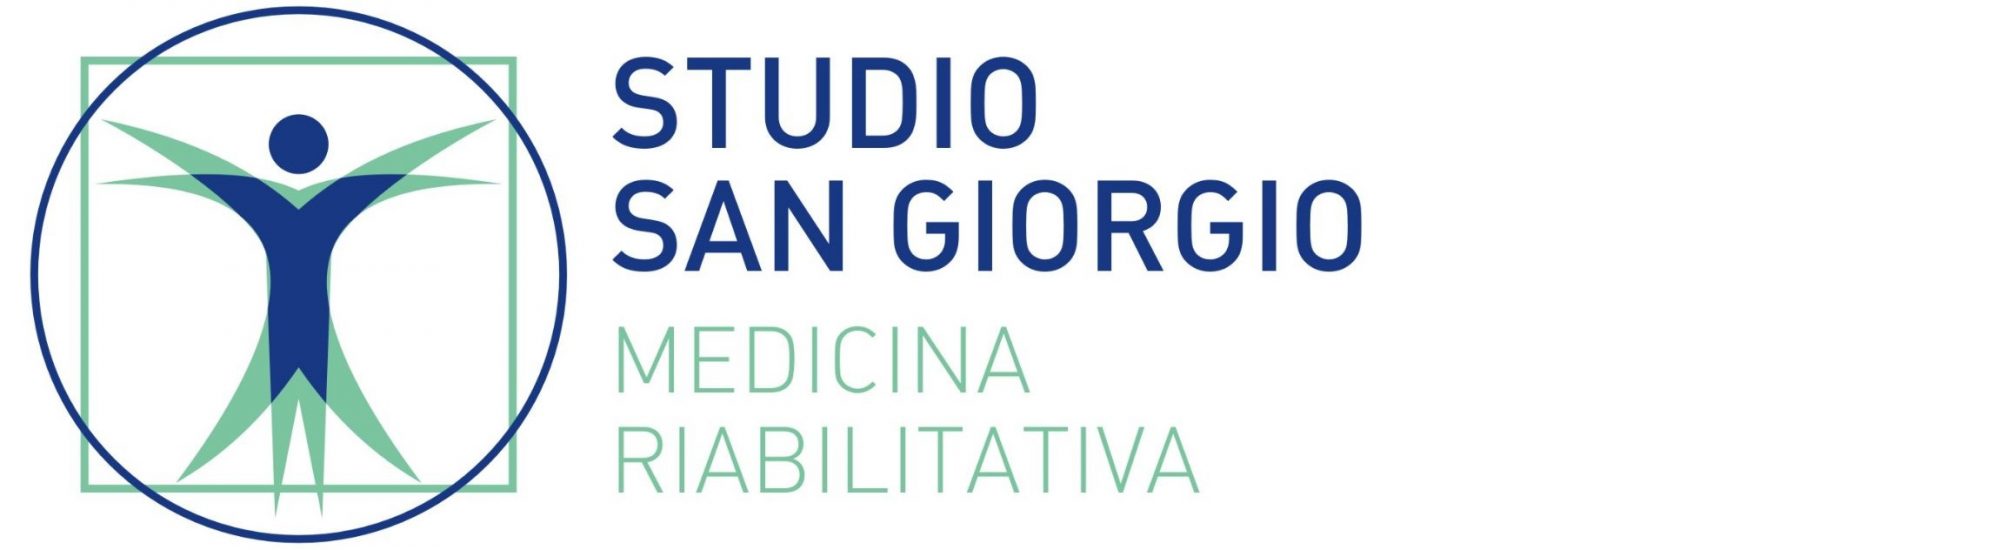 Studio San Giorgio